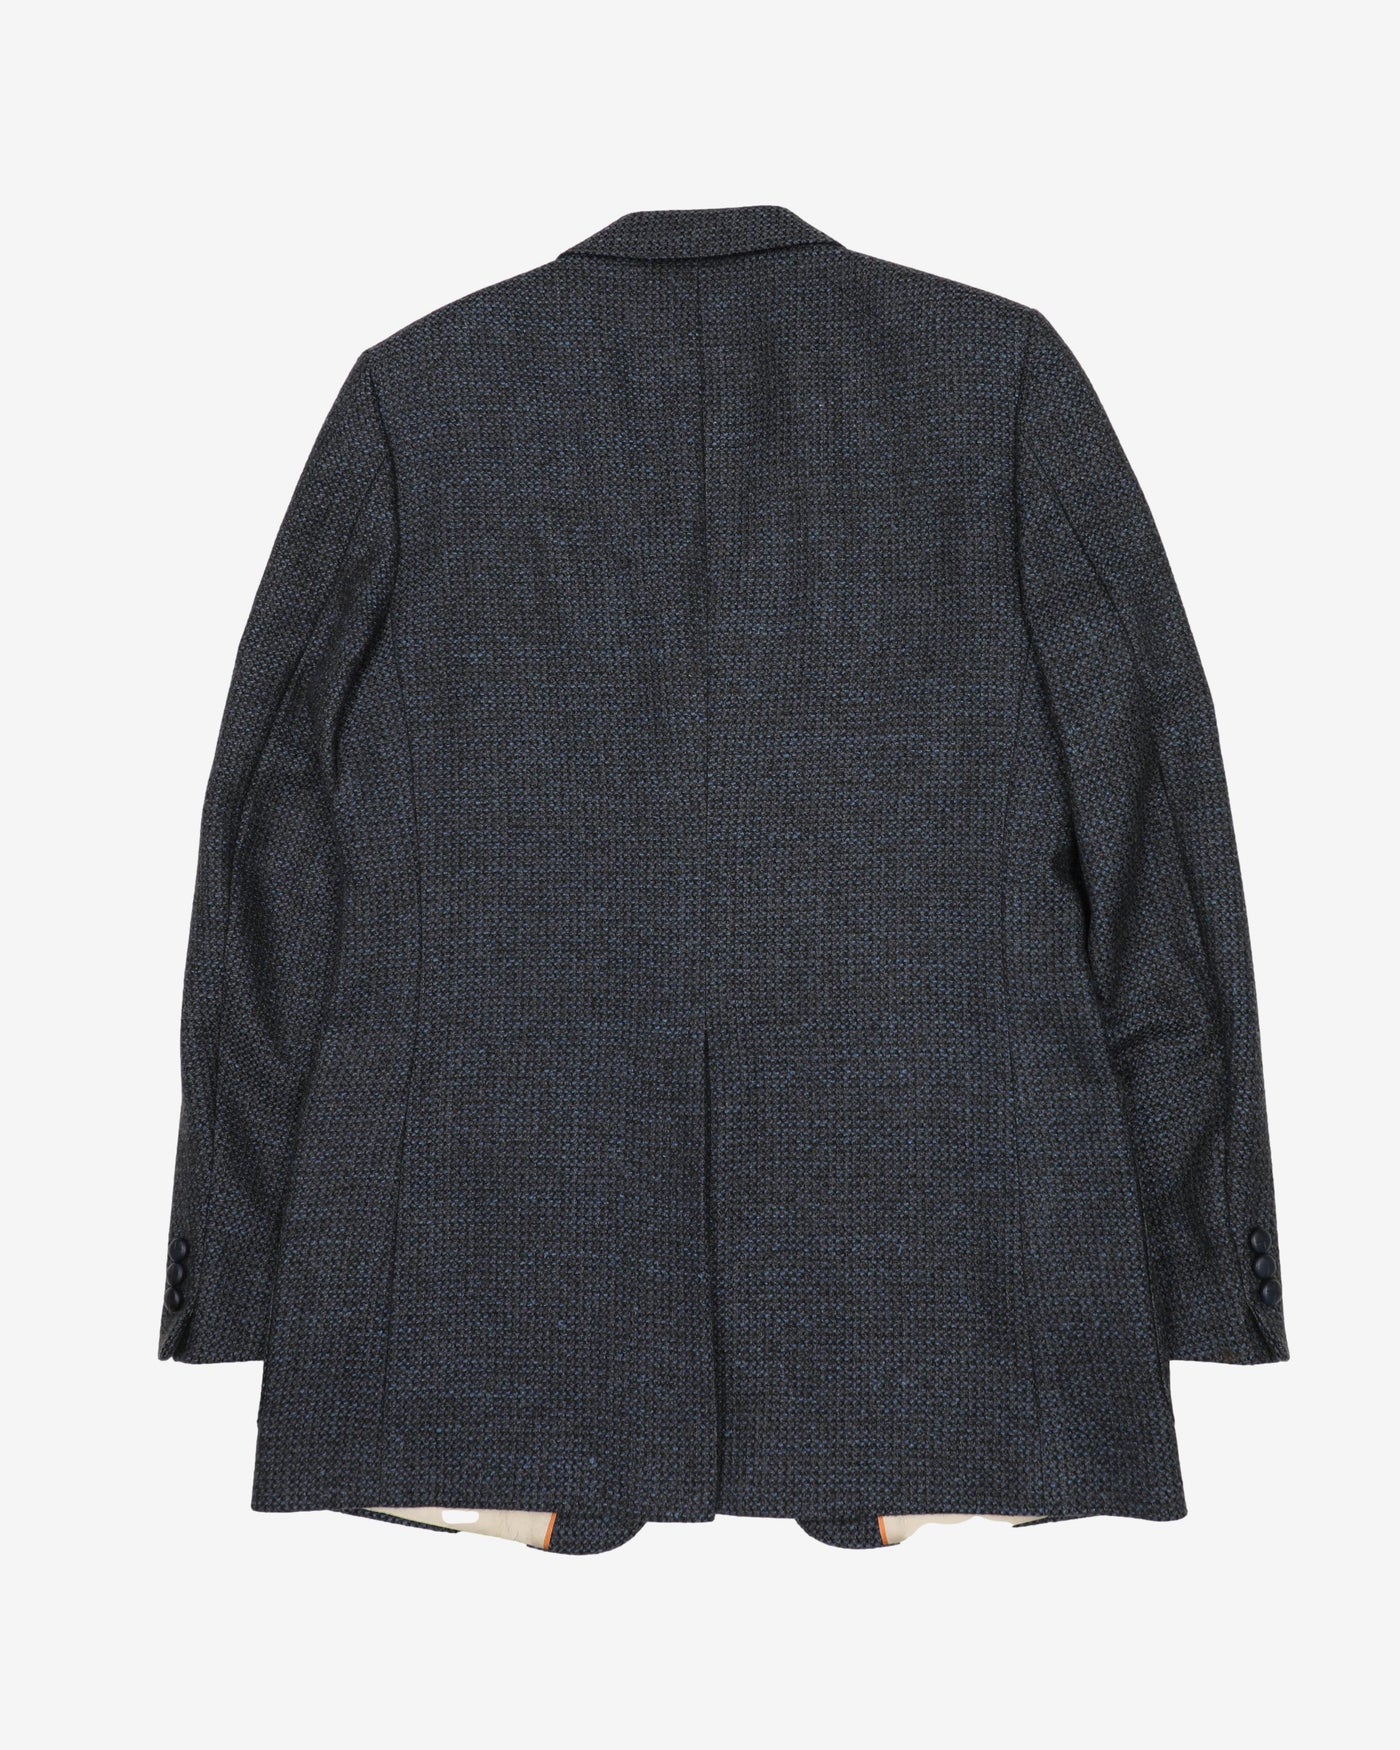 Blue And Black Wool Tweed Jacket - S